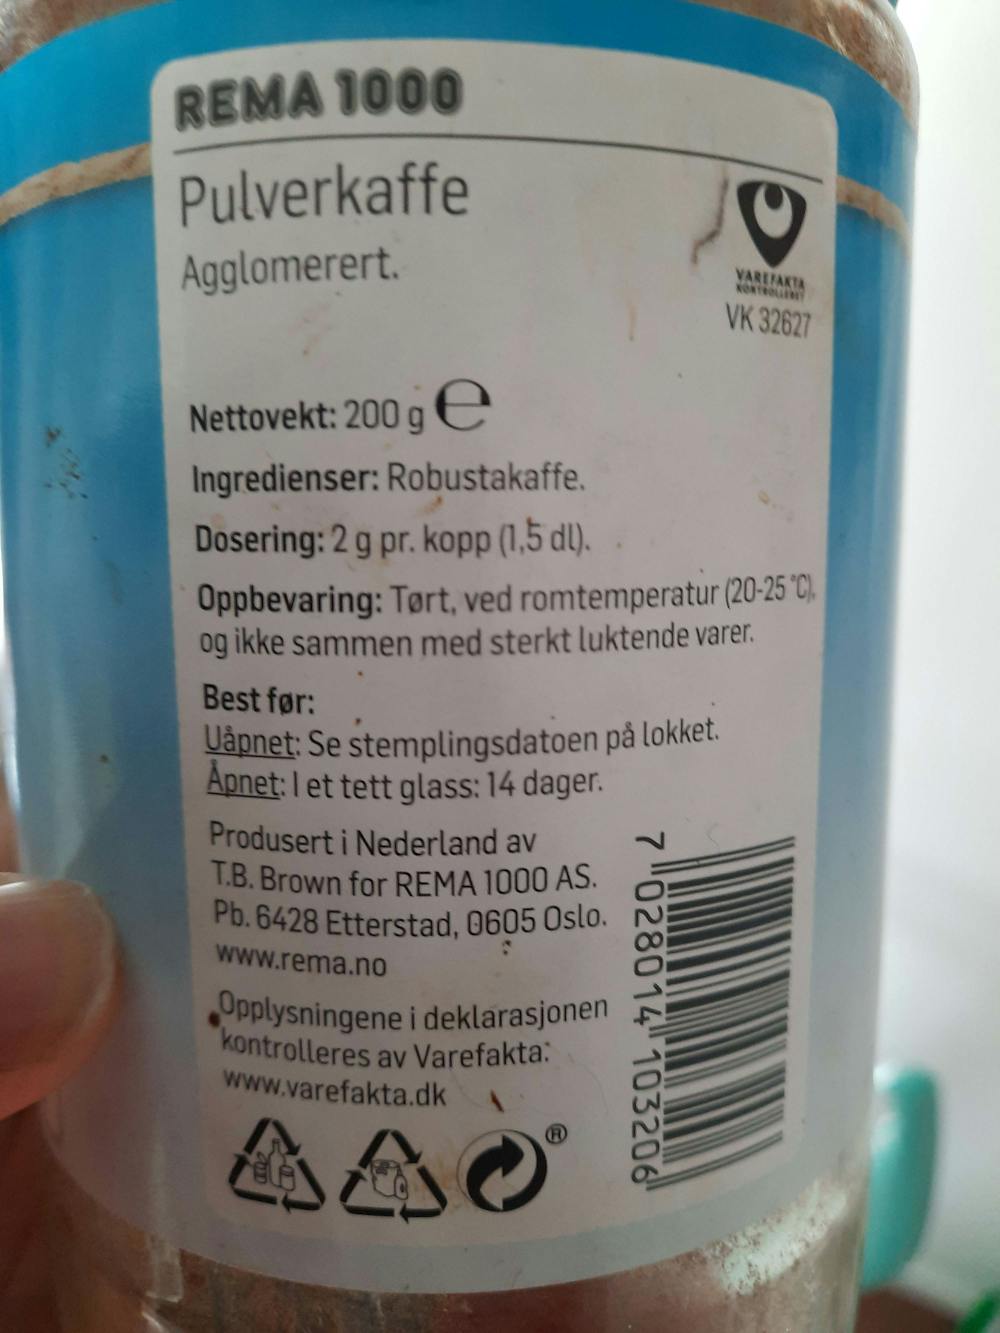 Ingredienslisten til Pulverkaffe, Rema1000